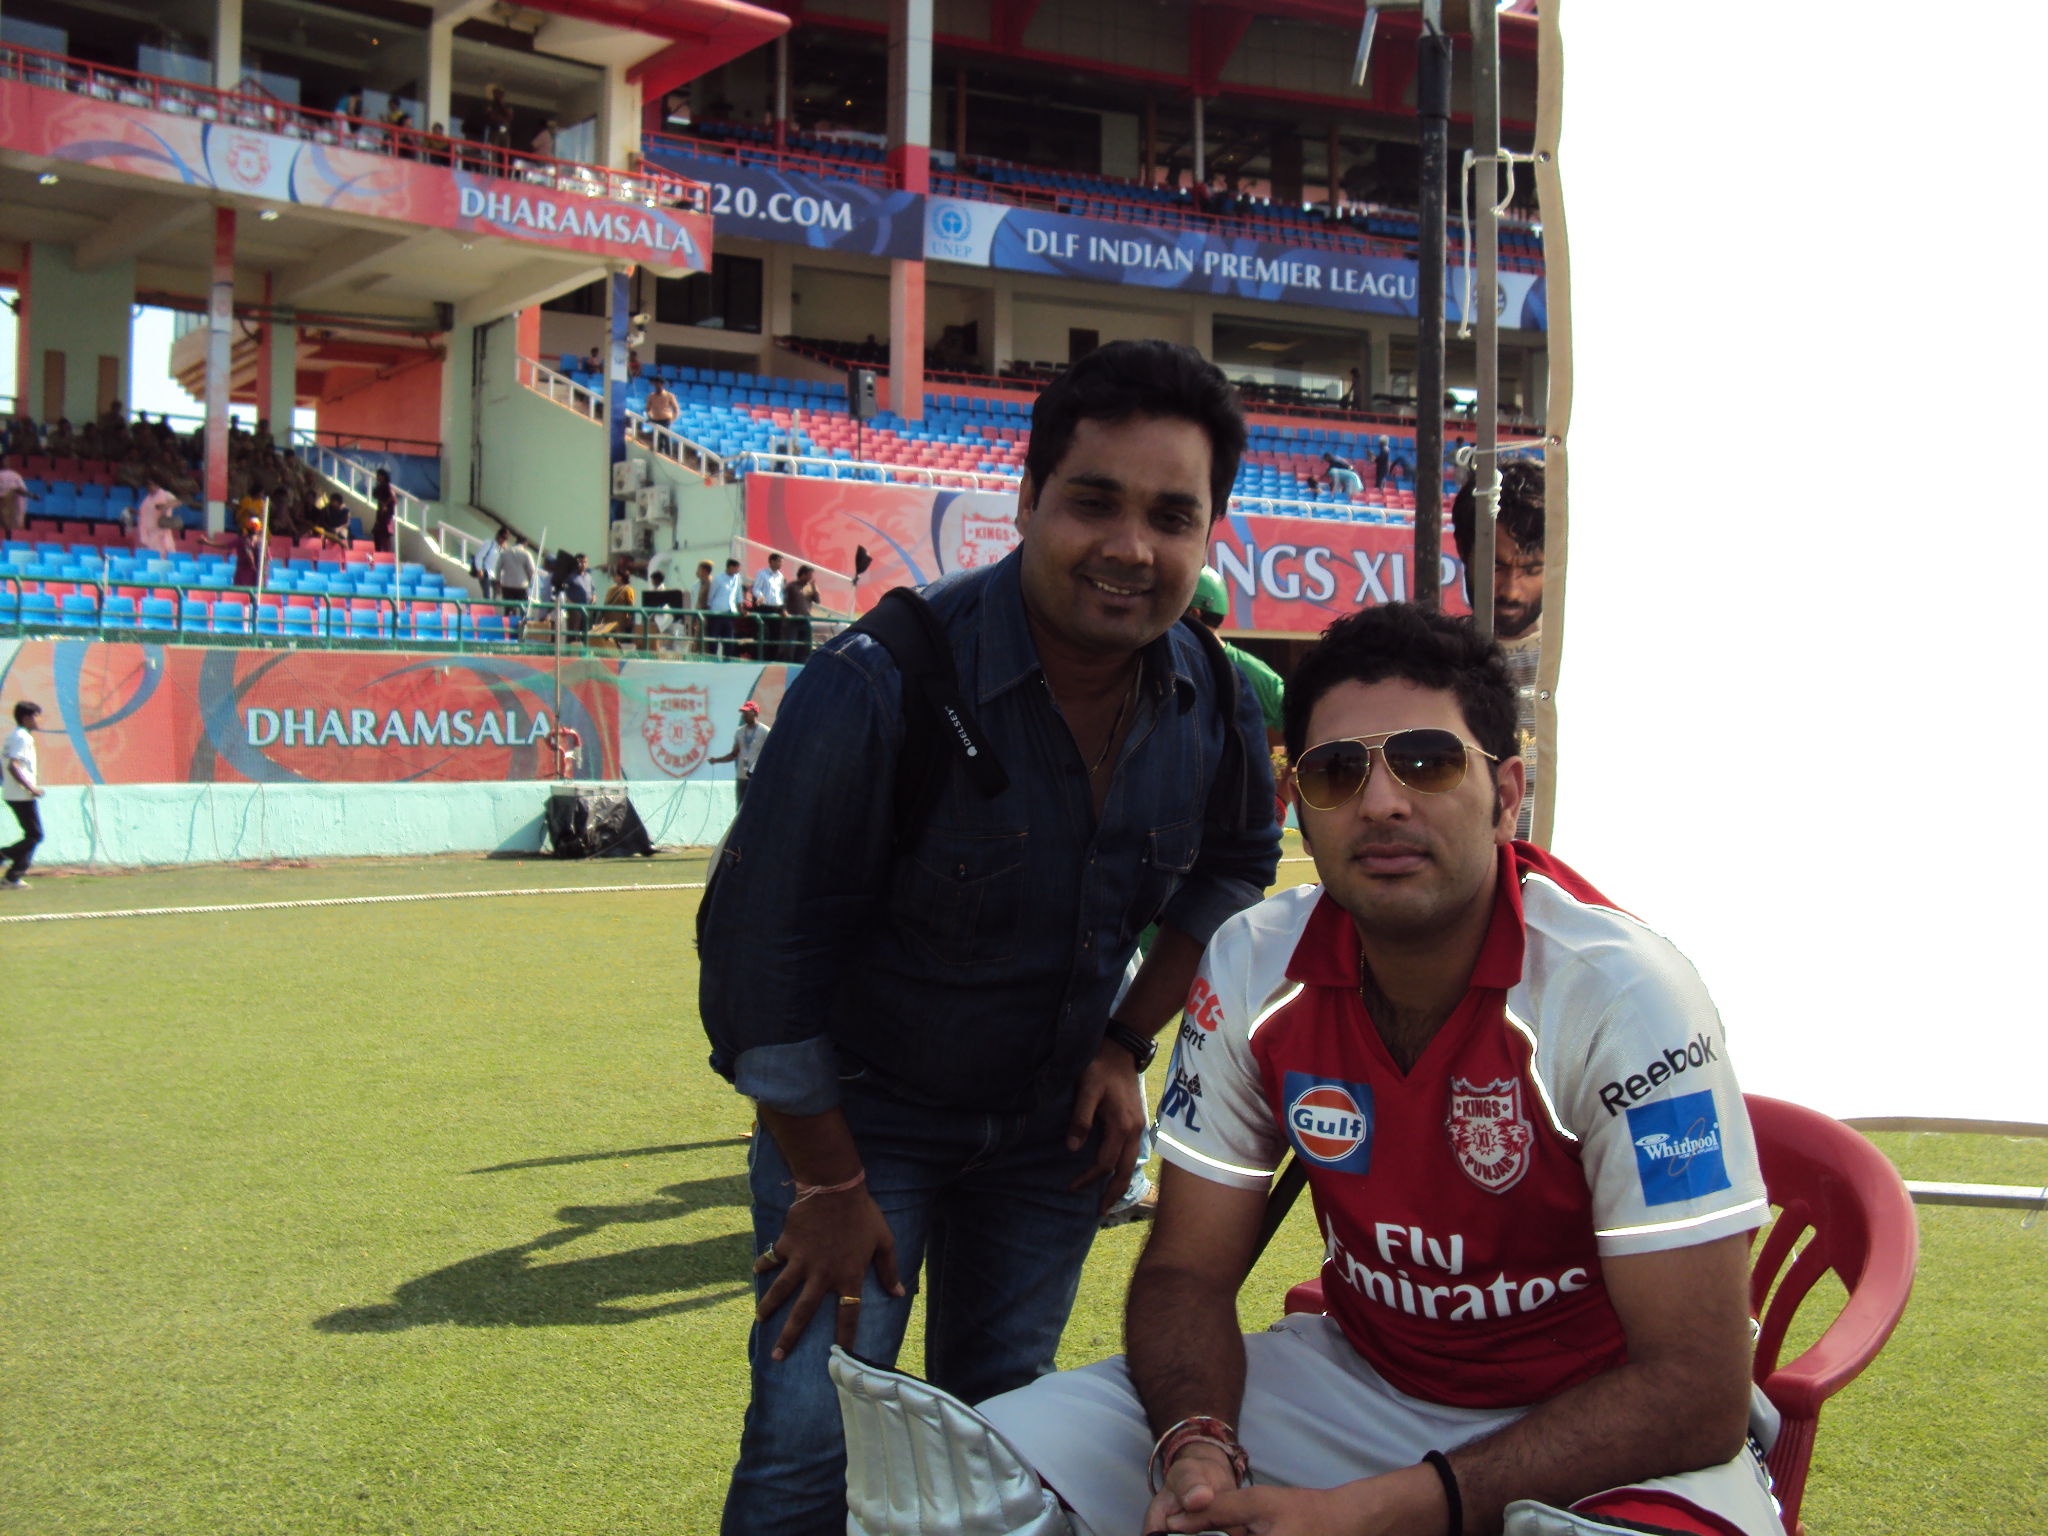 With Yuvraj Singh